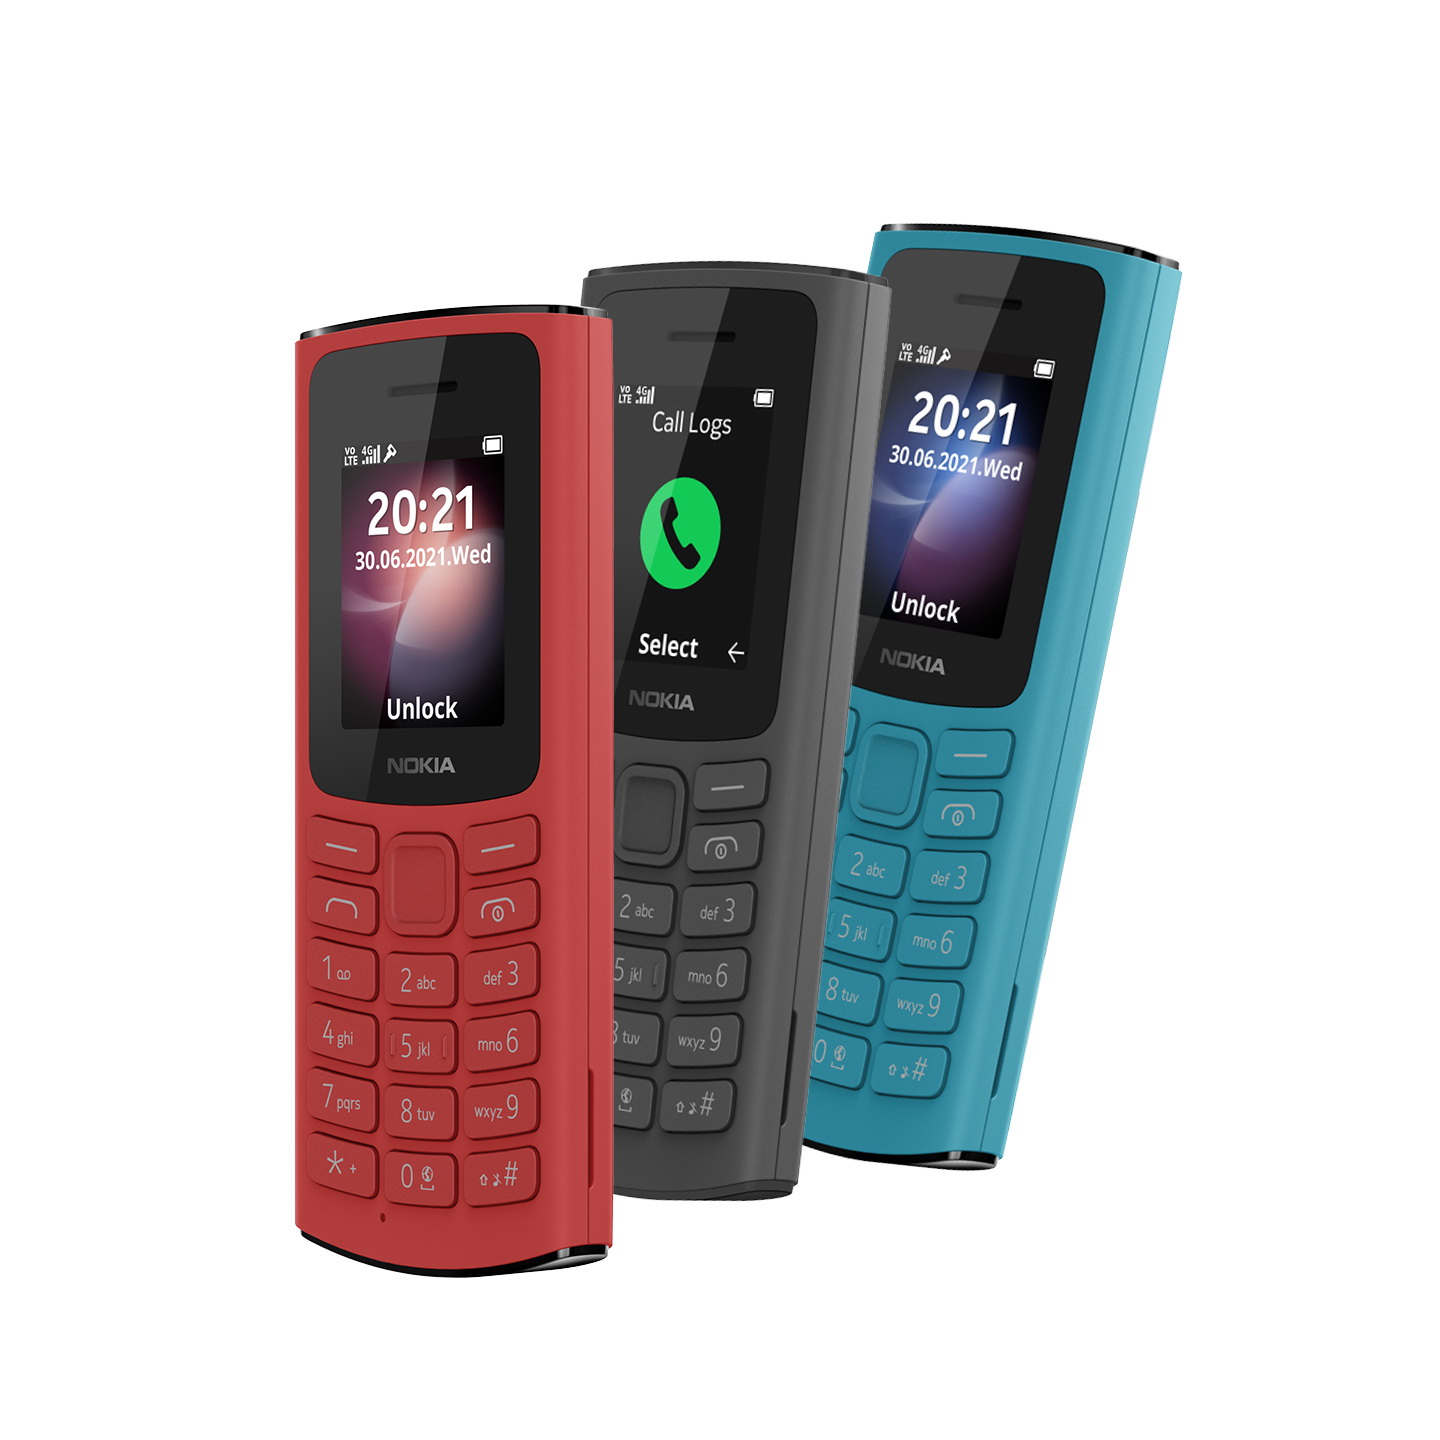 โนเกียเปิดตัว Nokia 105 4G - Nokia 110 4G เริ่มต้นเพียง 990 บาท จับกลุ่มผู้สูงอายุ